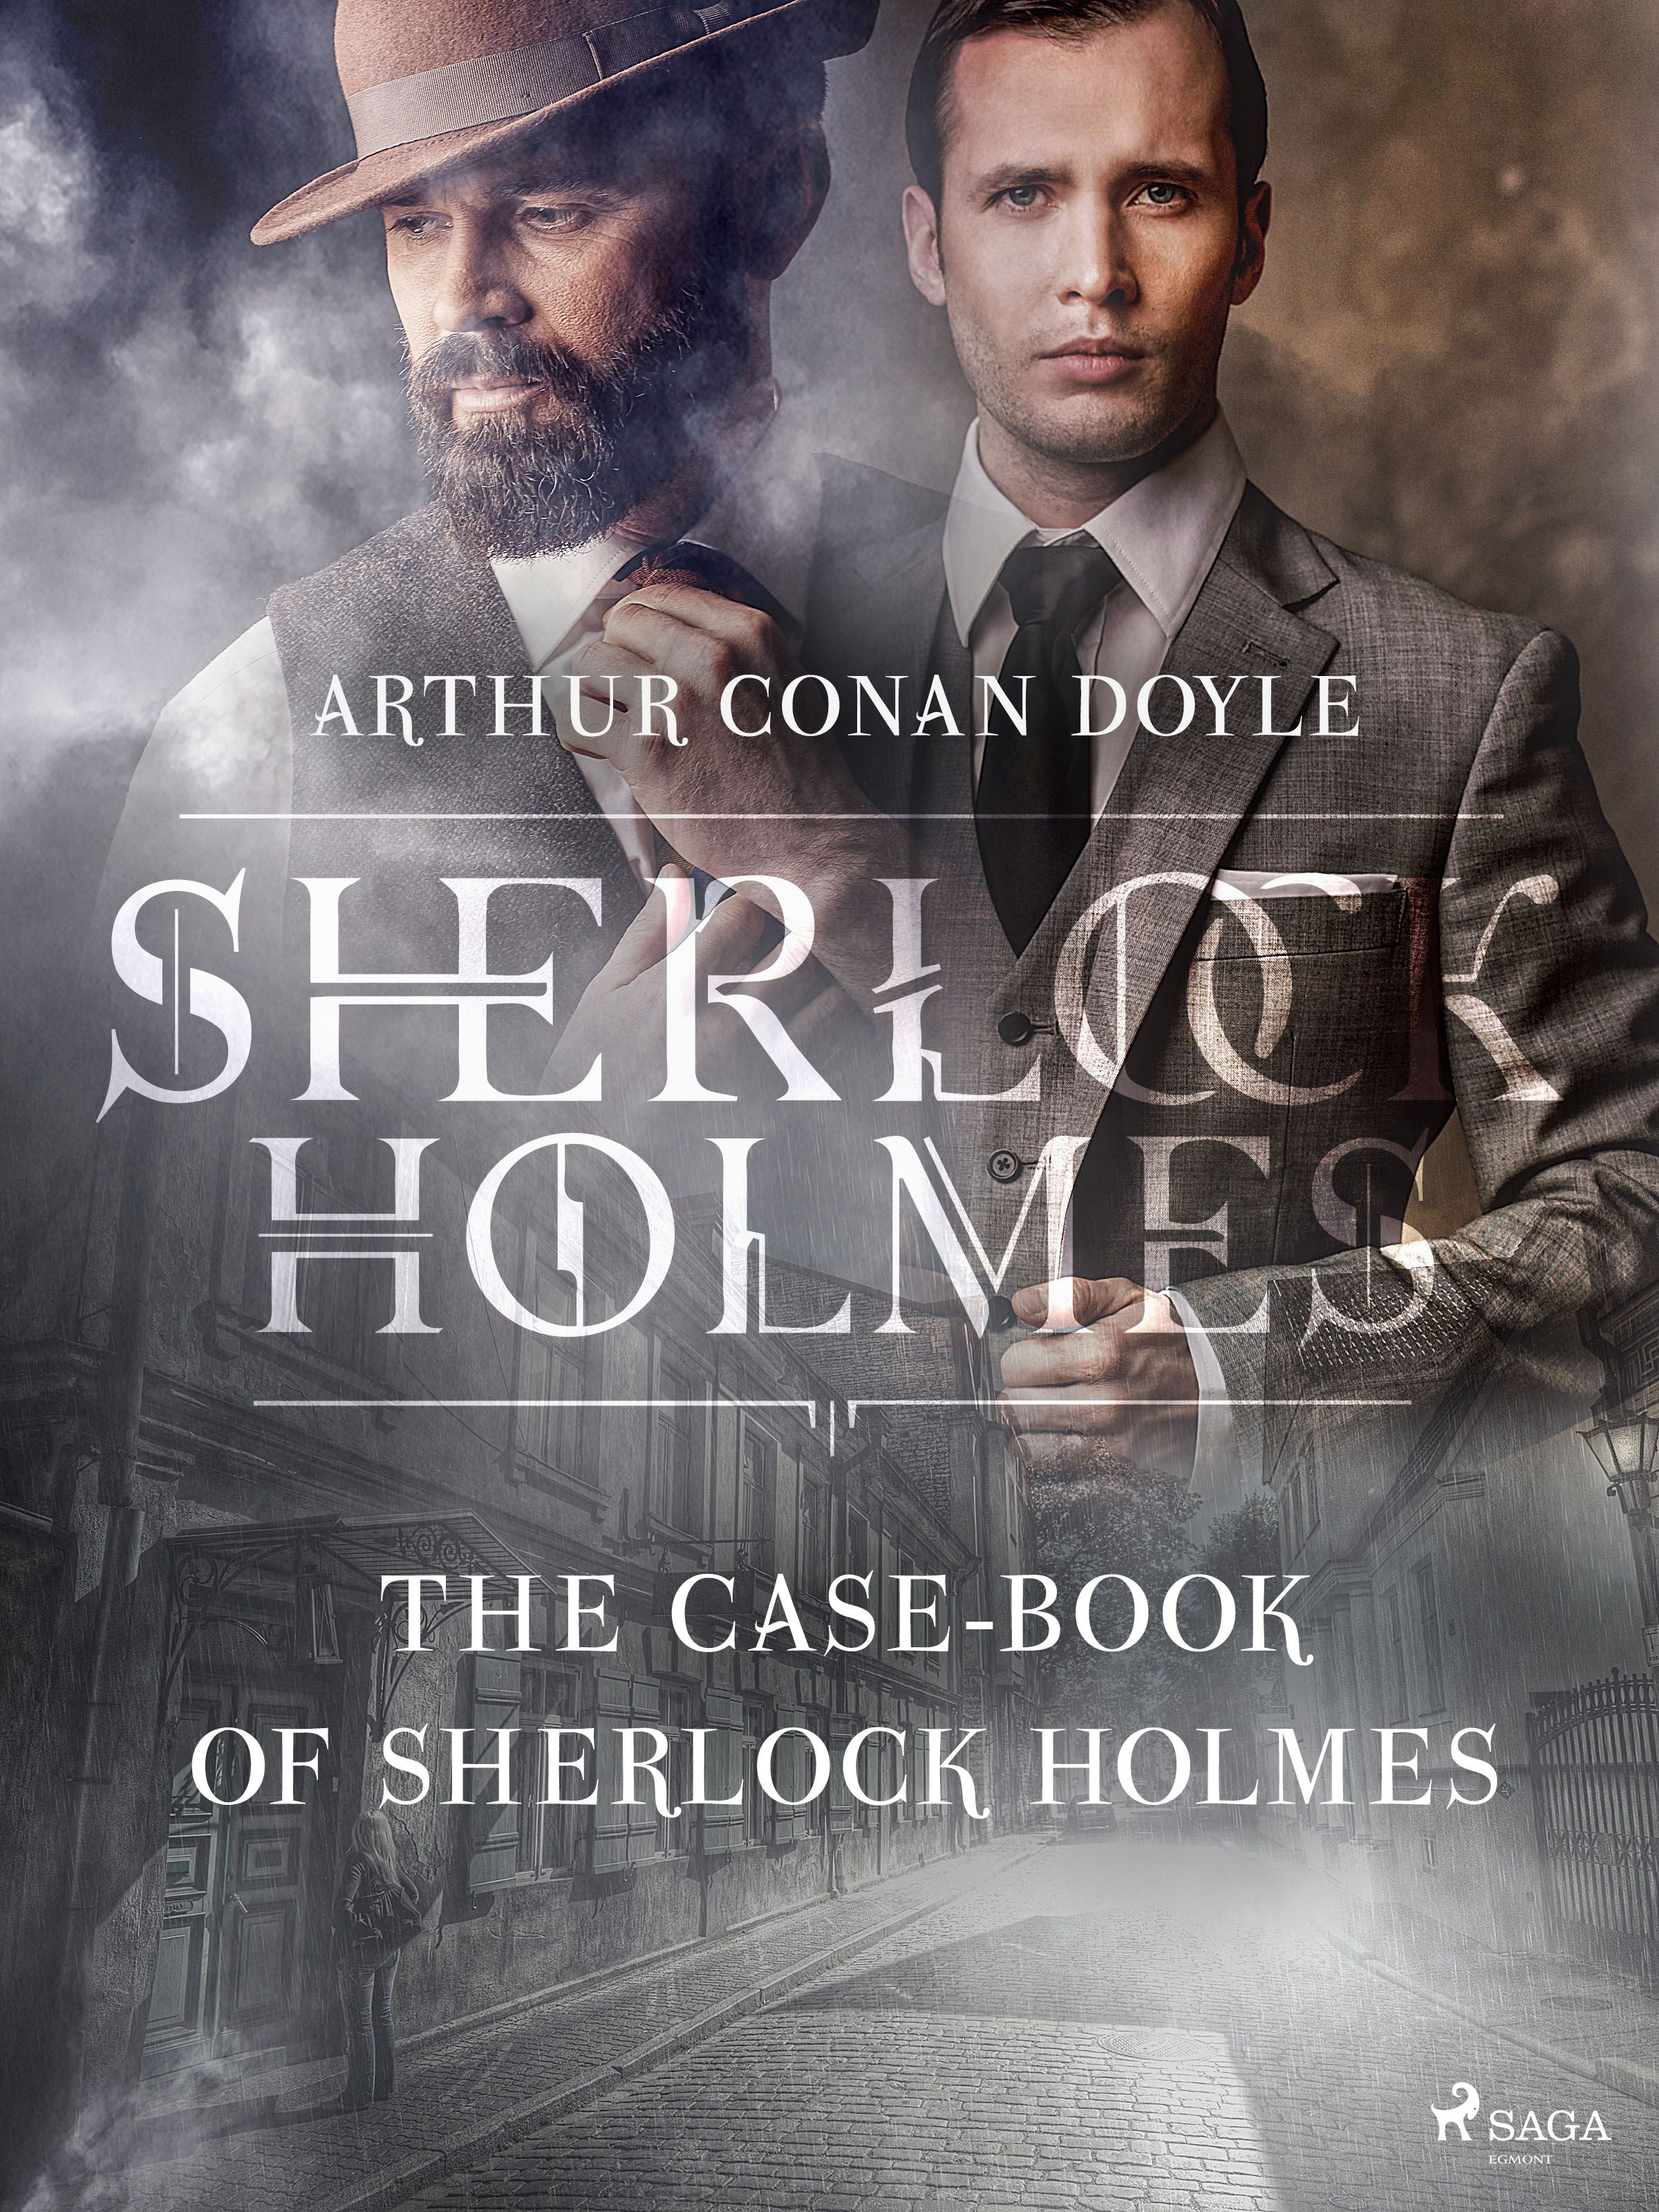 The Case-Book of Sherlock Holmes, e-bog af Arthur Conan Doyle